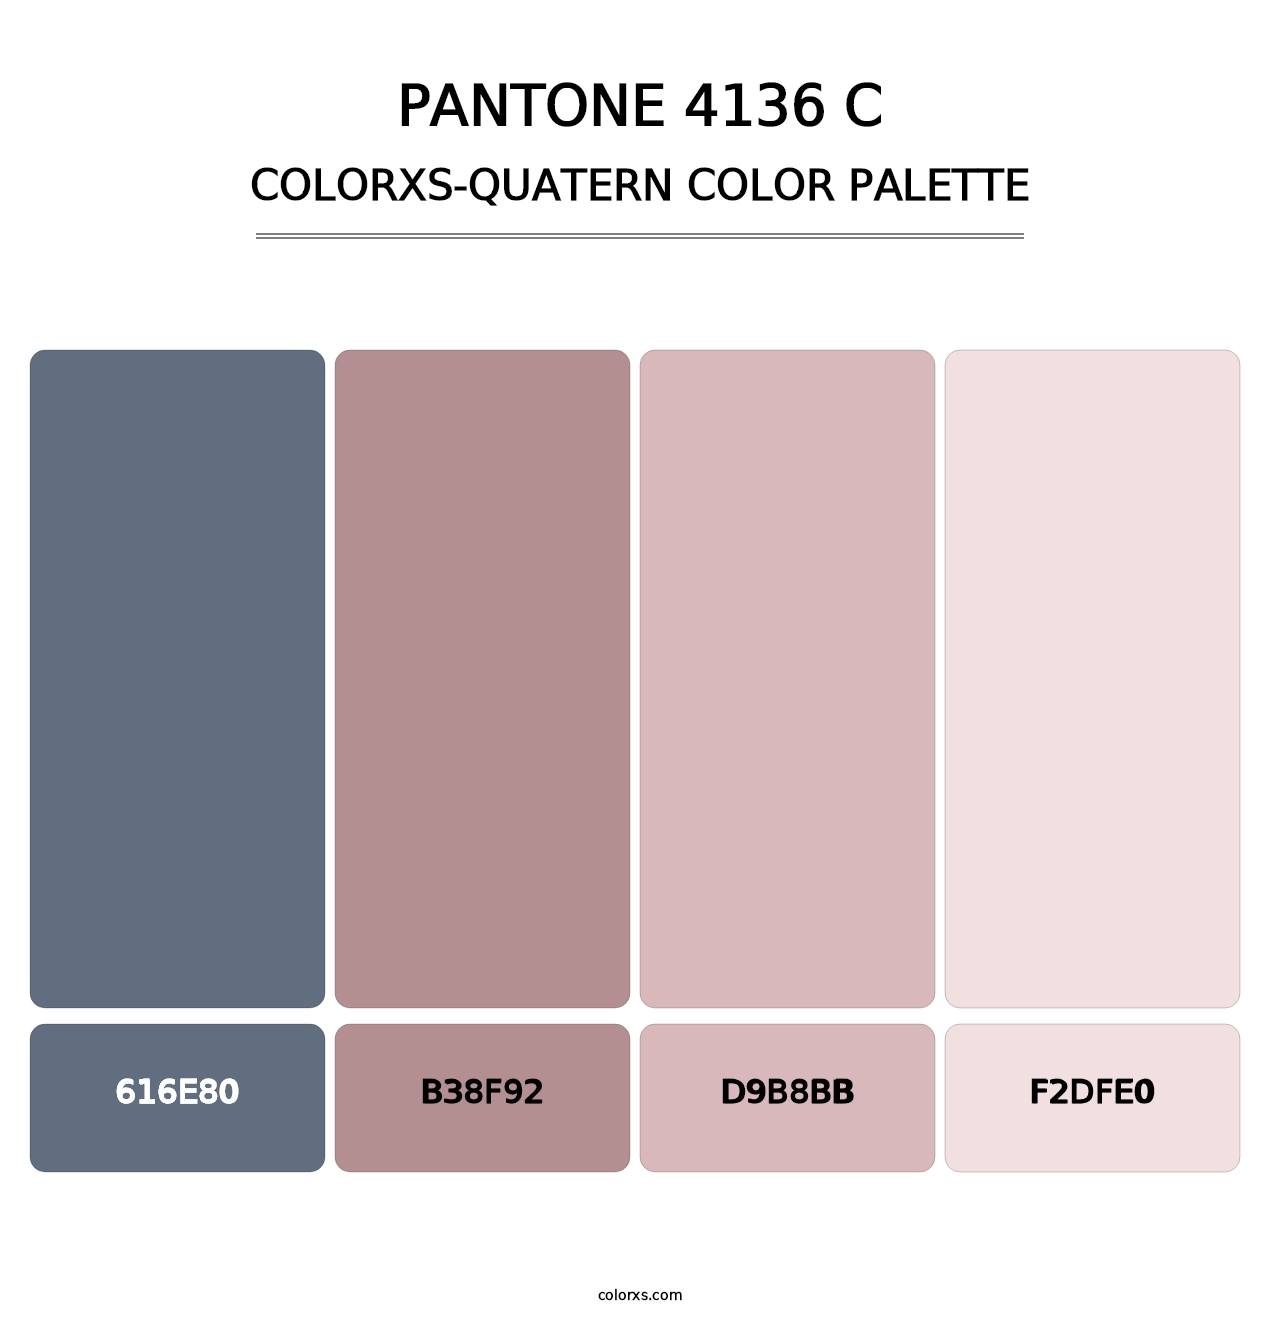 PANTONE 4136 C - Colorxs Quatern Palette